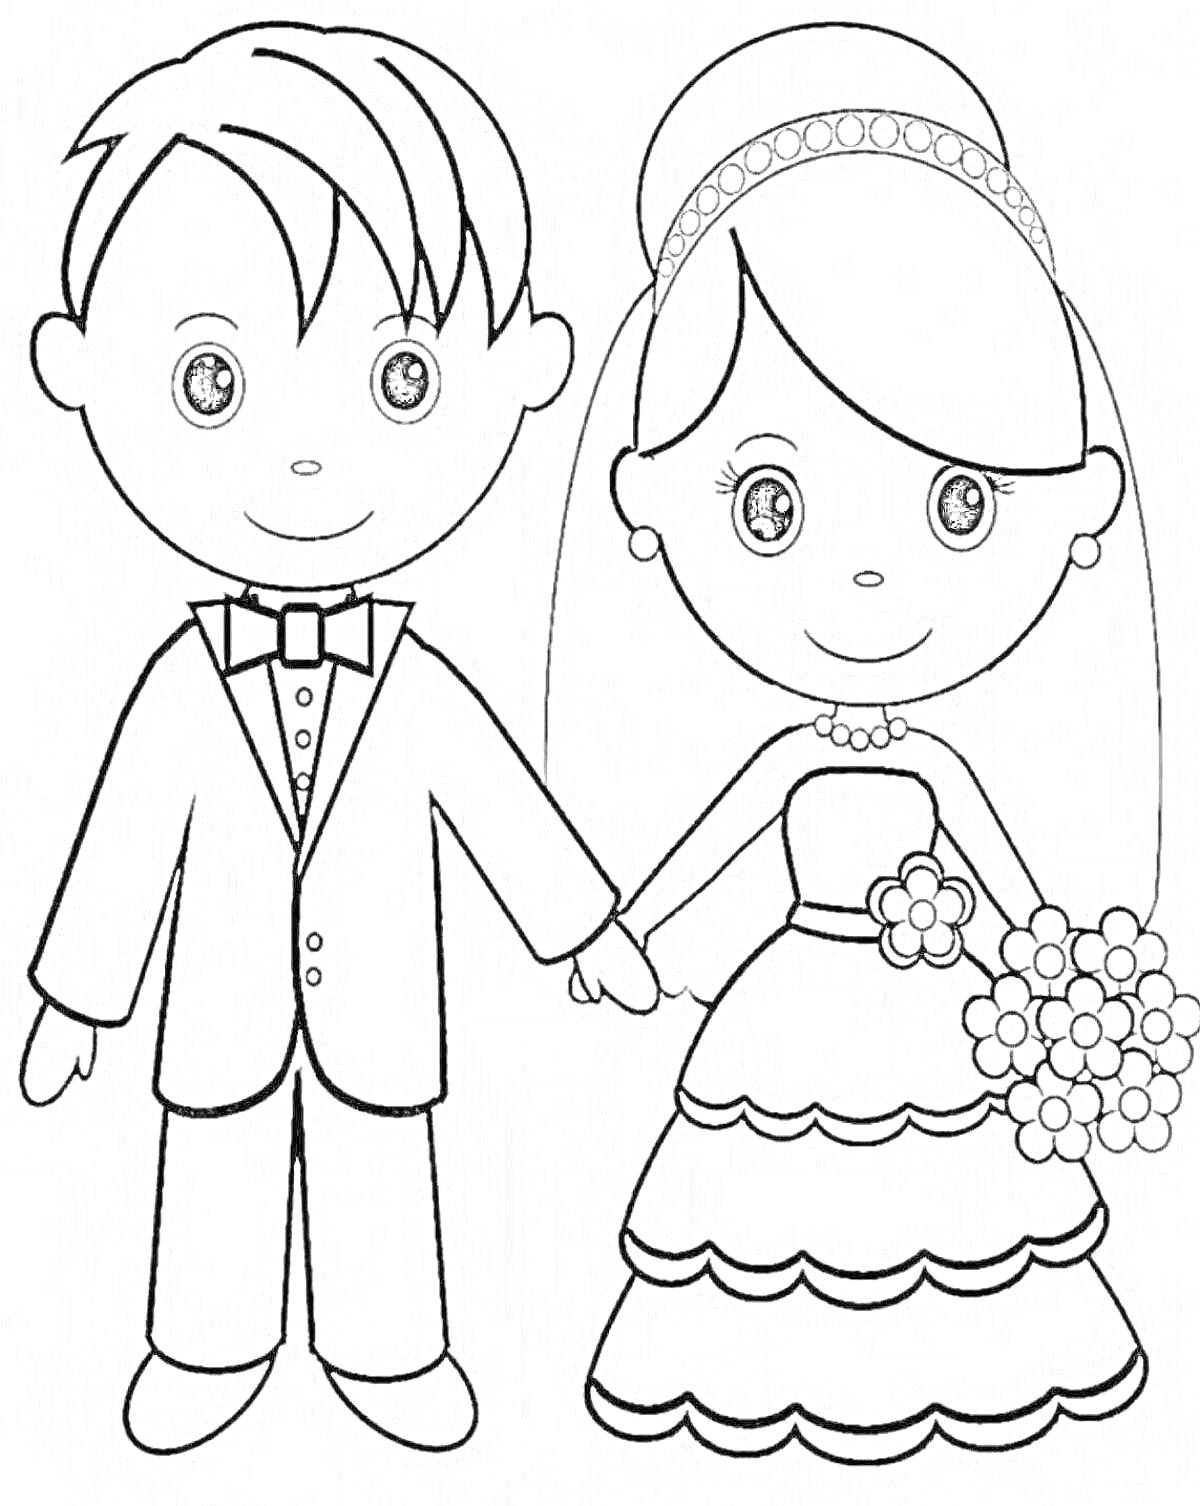 Раскраска Жених и невеста, держась за руки, жених в костюме с галстуком-бабочкой, невеста в длинном подвенечном платье, с букетом цветов и украшением на голове